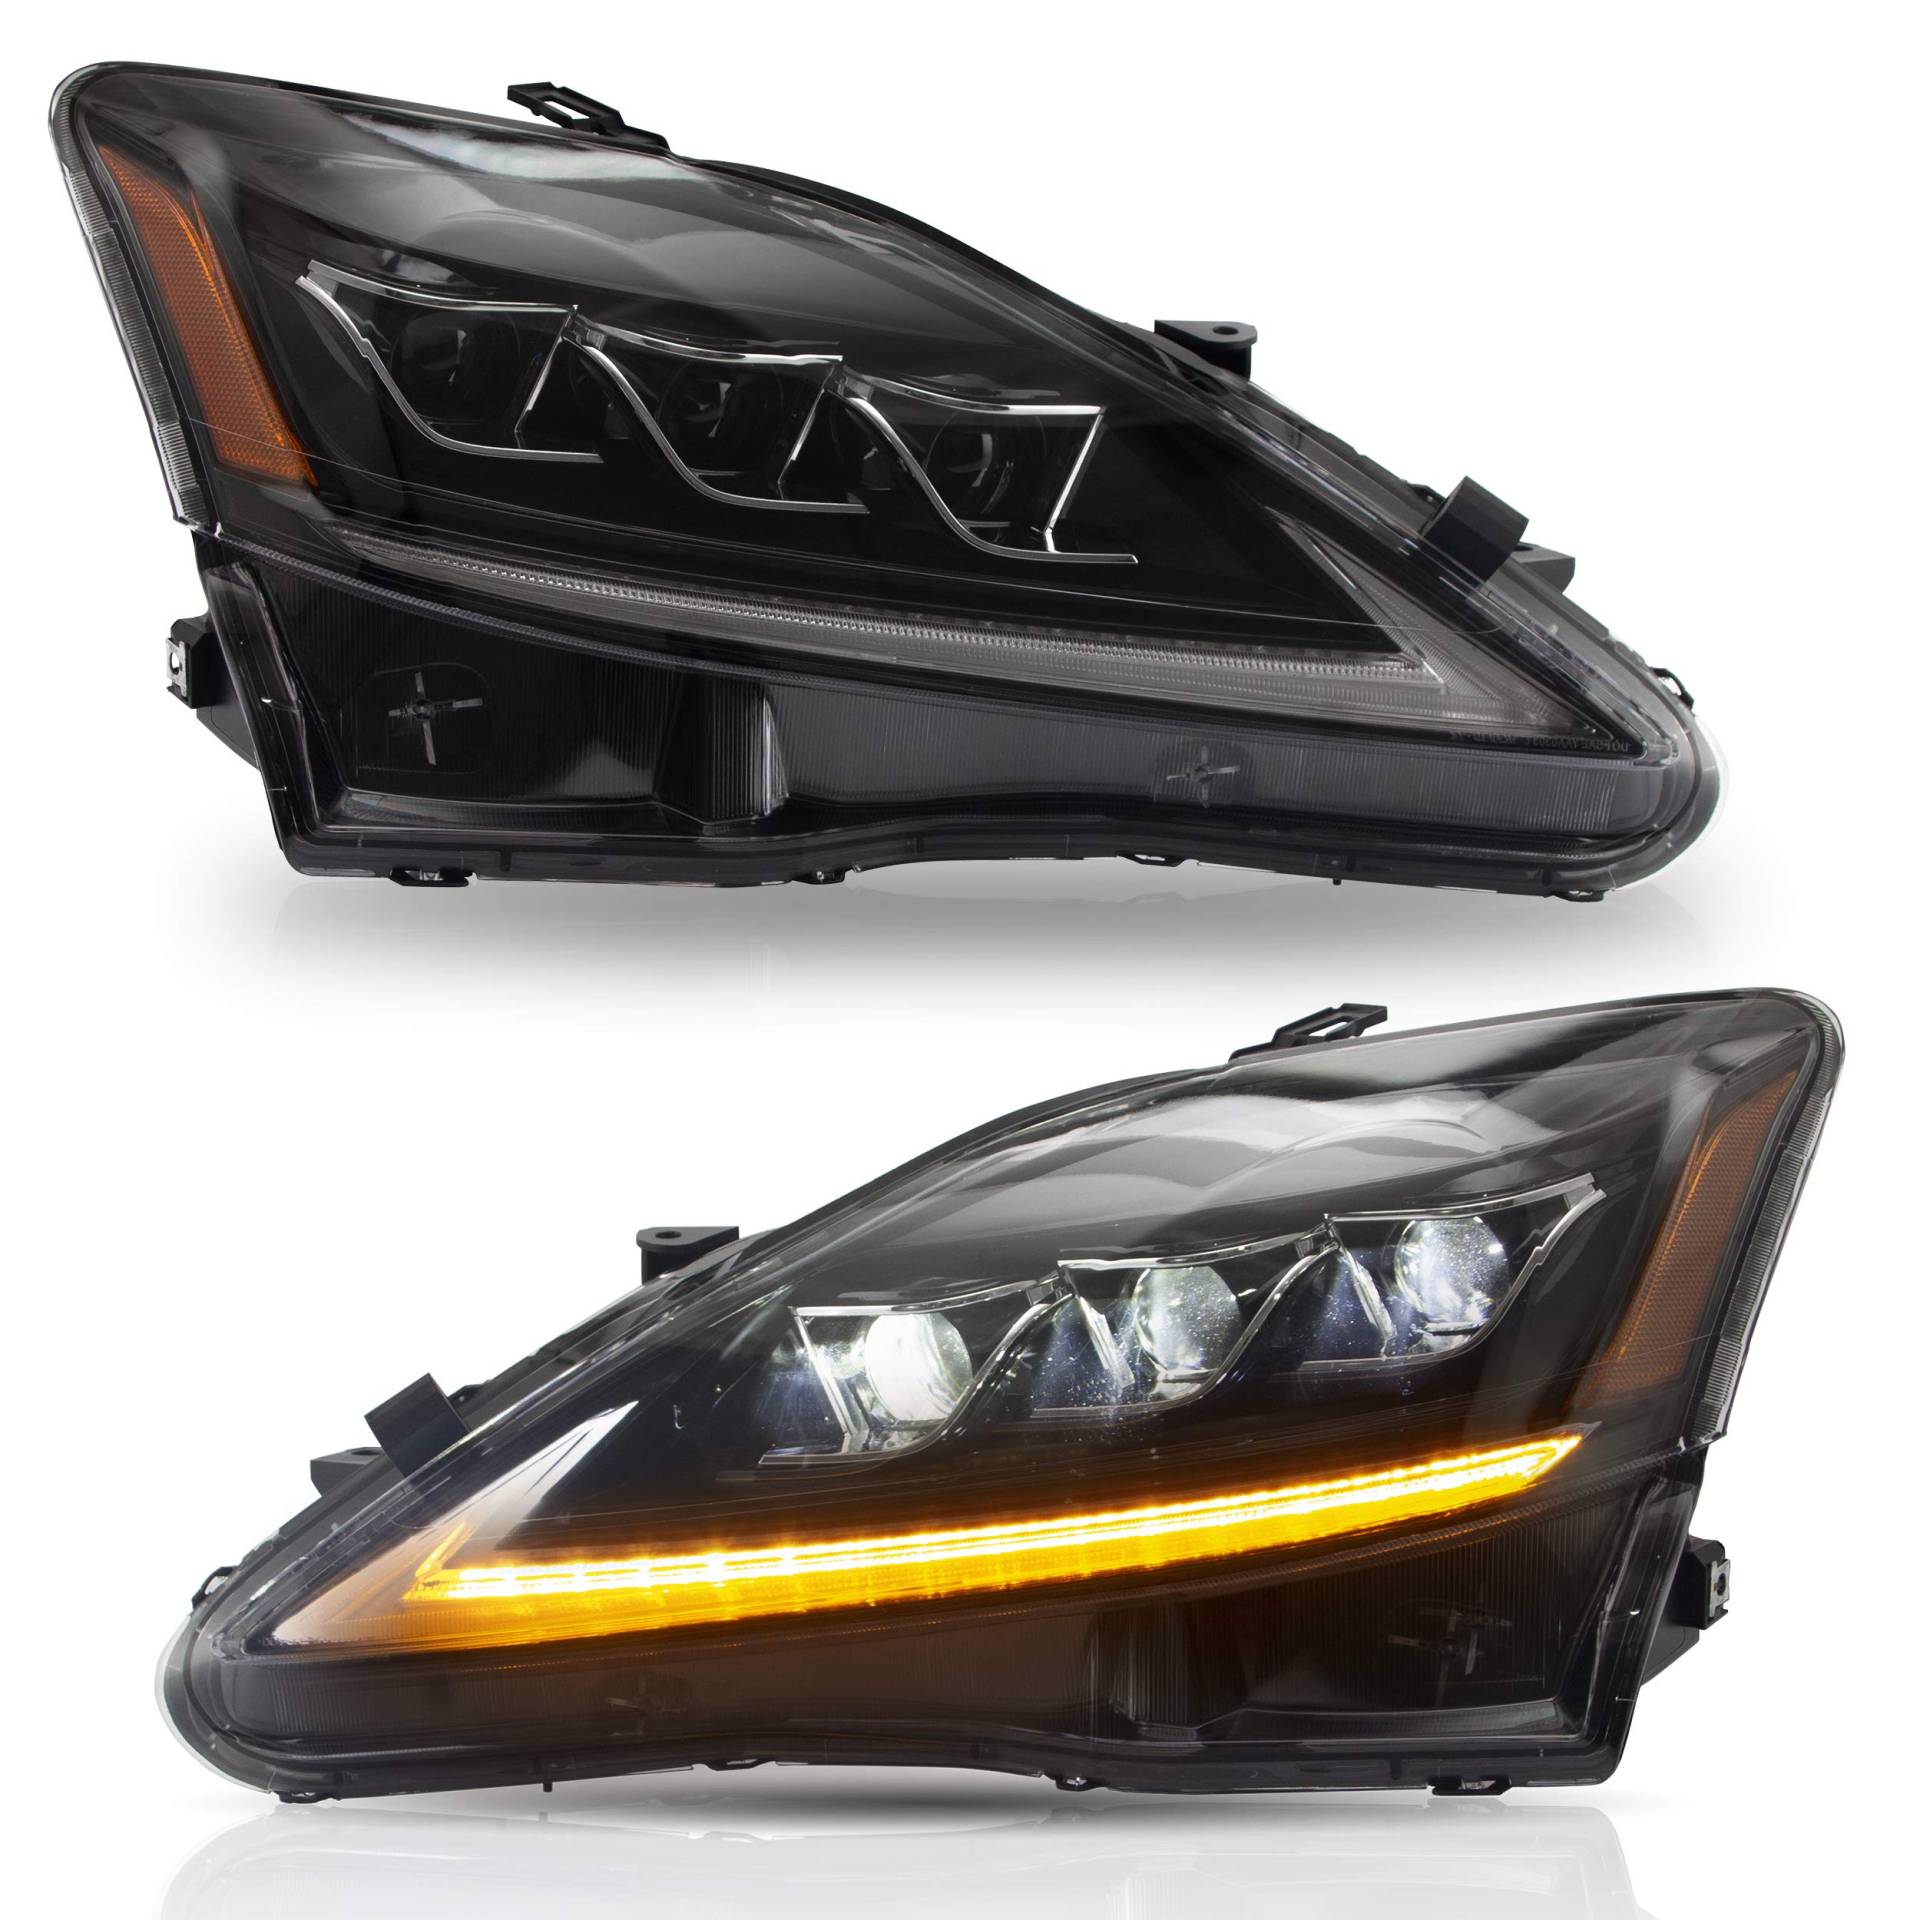 VLAND Scheinwerfer für Lexus IS250 2006-2012 Voll-Scheinwerfer mit Blinker-Sequenzanzeige, Abblendlicht und Fernlicht.Lieferung innerhalb von VLAND